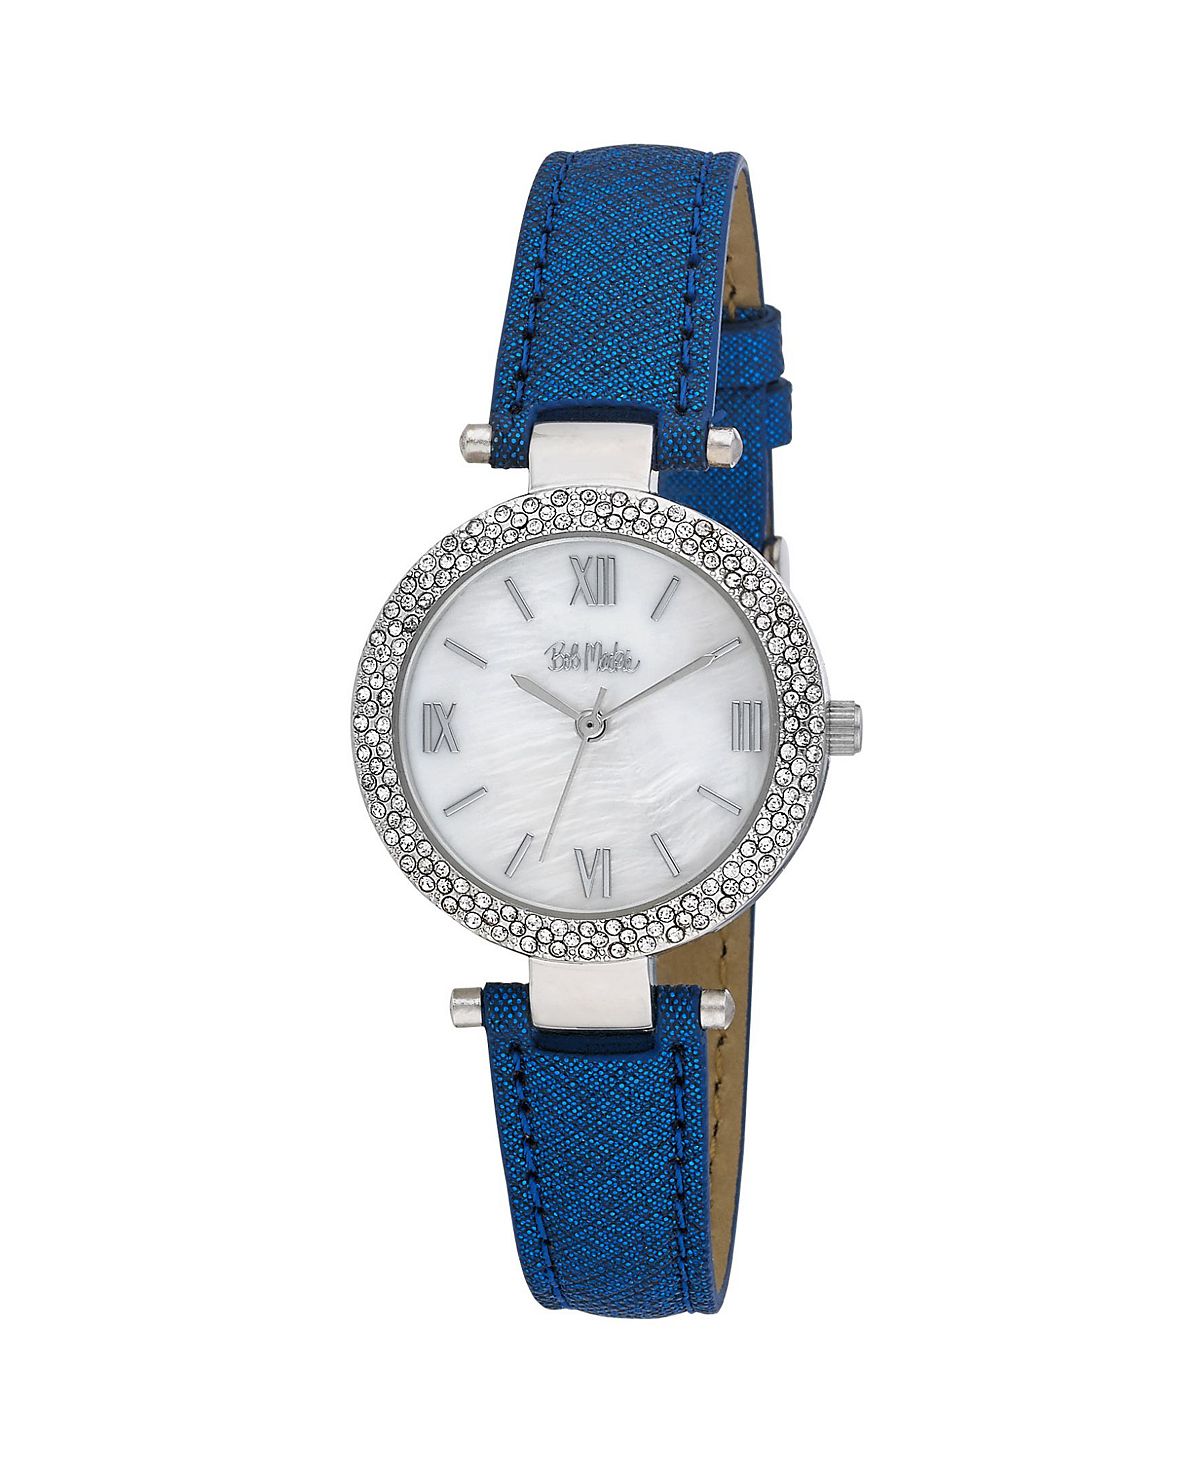 цена Женские часы с блестящим циферблатом из полиуретана, синий полиуретановый ремешок, 30 мм Bob Mackie, синий